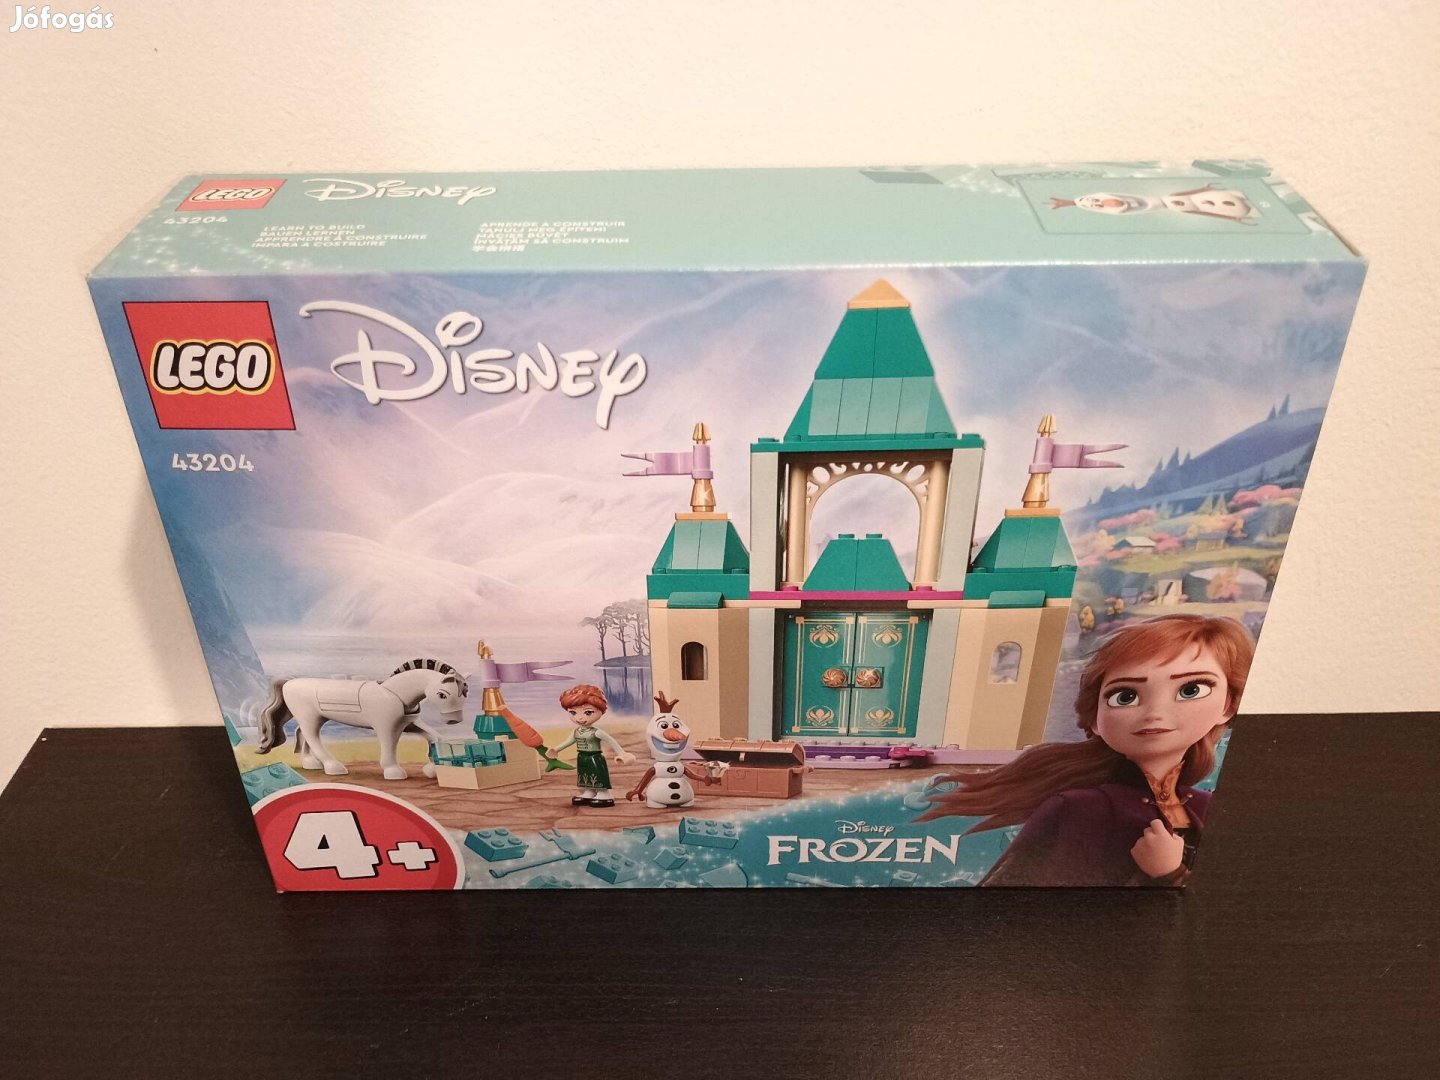 Új, bontatlan Lego Disney Frozen 43204 Anna és Olaf kastélybeli mókája